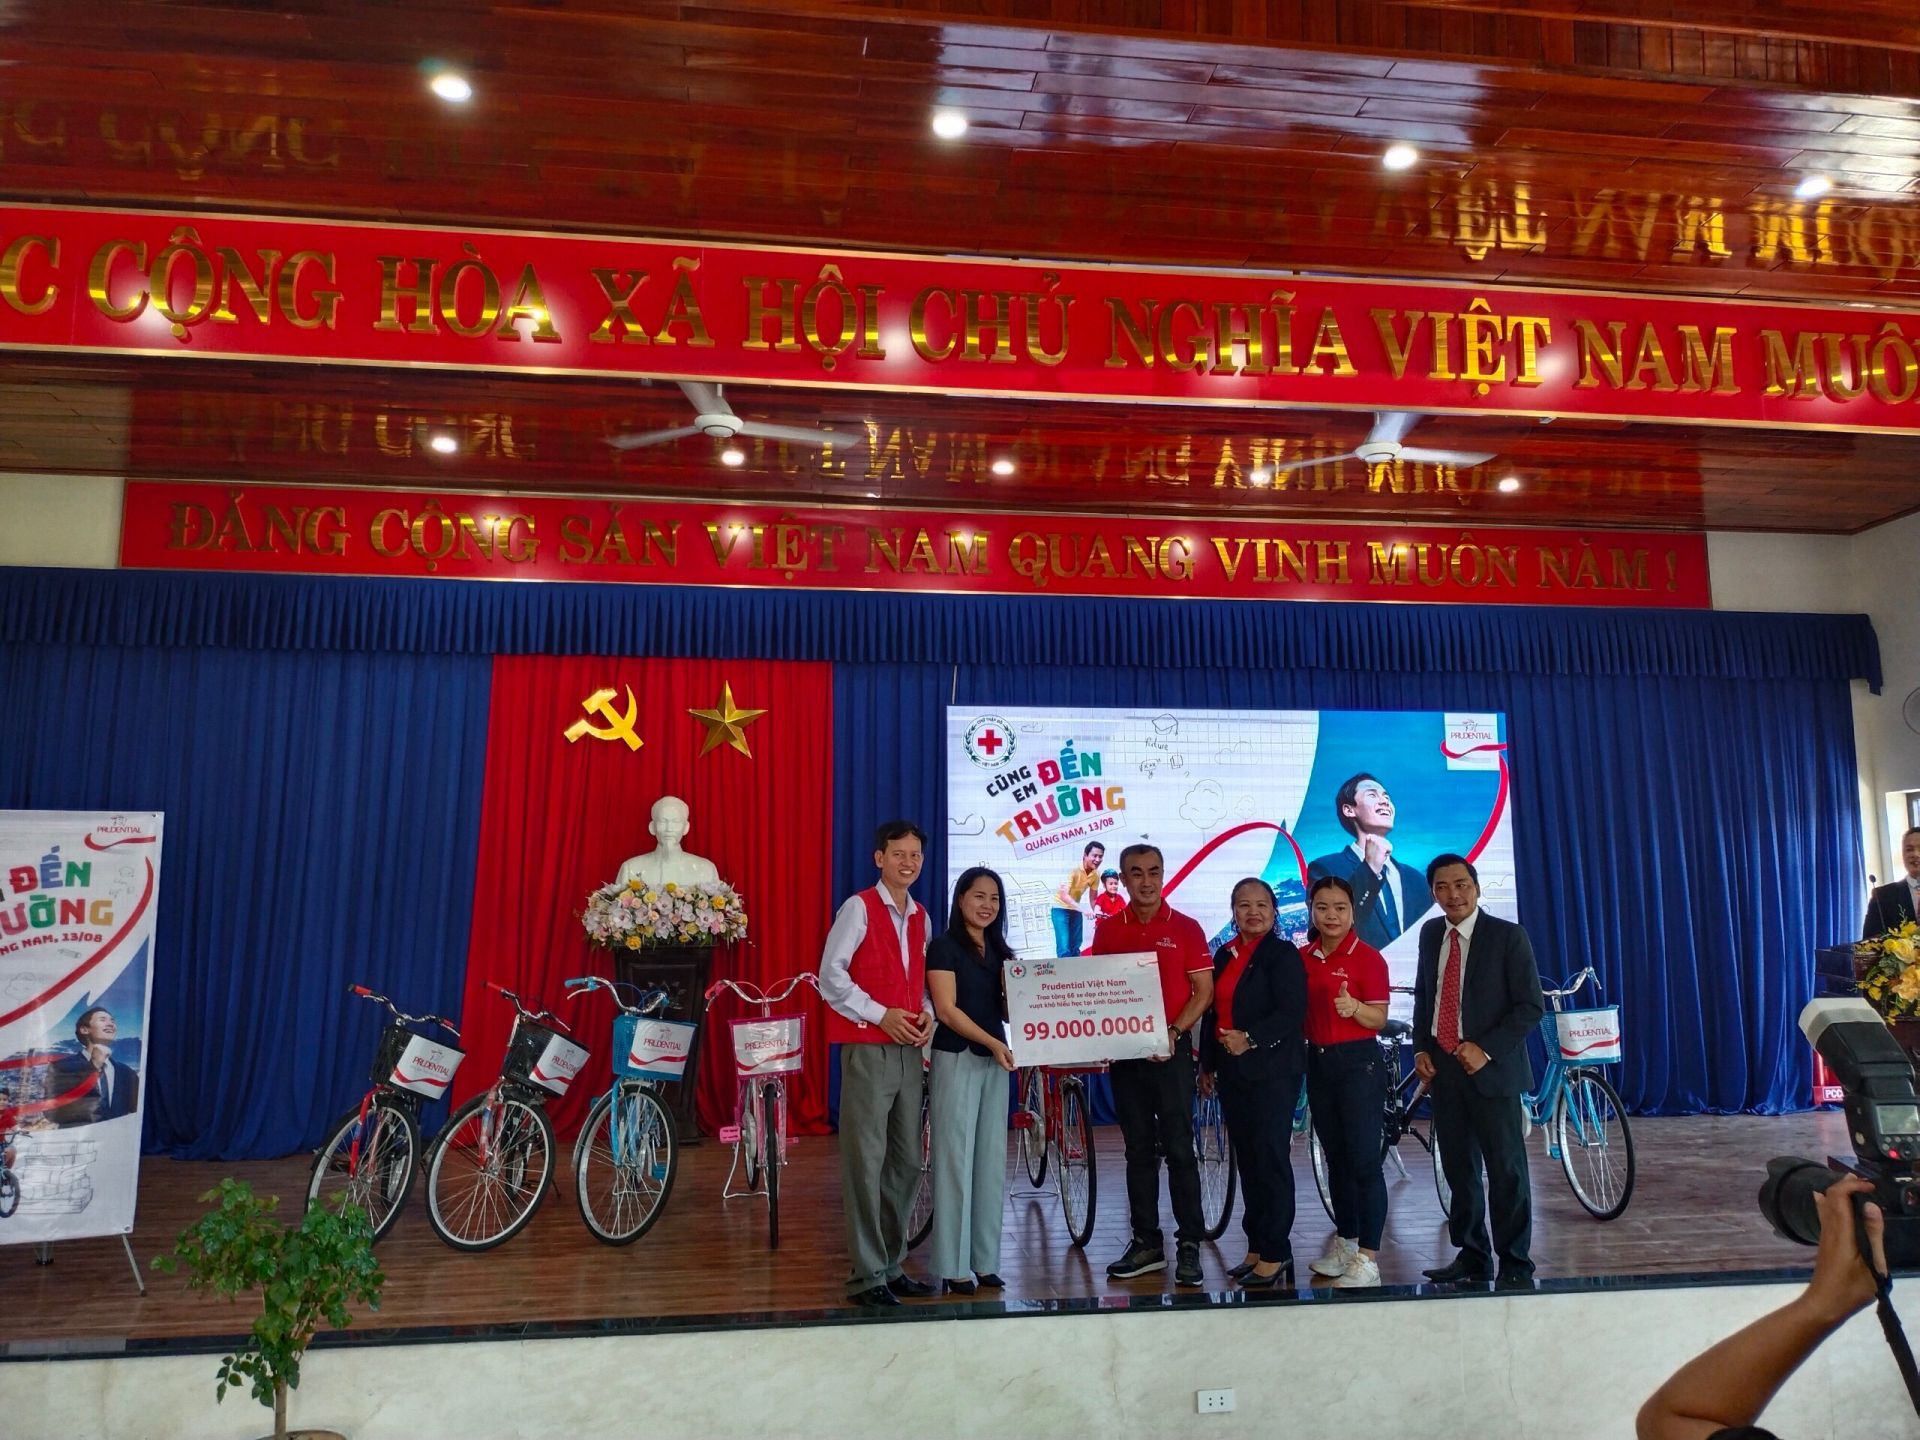 Prudential phối hợp cùng Hội Chữ thập đỏ tỉnh Quảng Nam, với sự ủng hộ của chính quyền địa phương đã trao tặng 66 xe đạp cho học sinh có hoàn cảnh gia đình khó khăn, tổng trị giá quà tặng là 99 triệu đồng